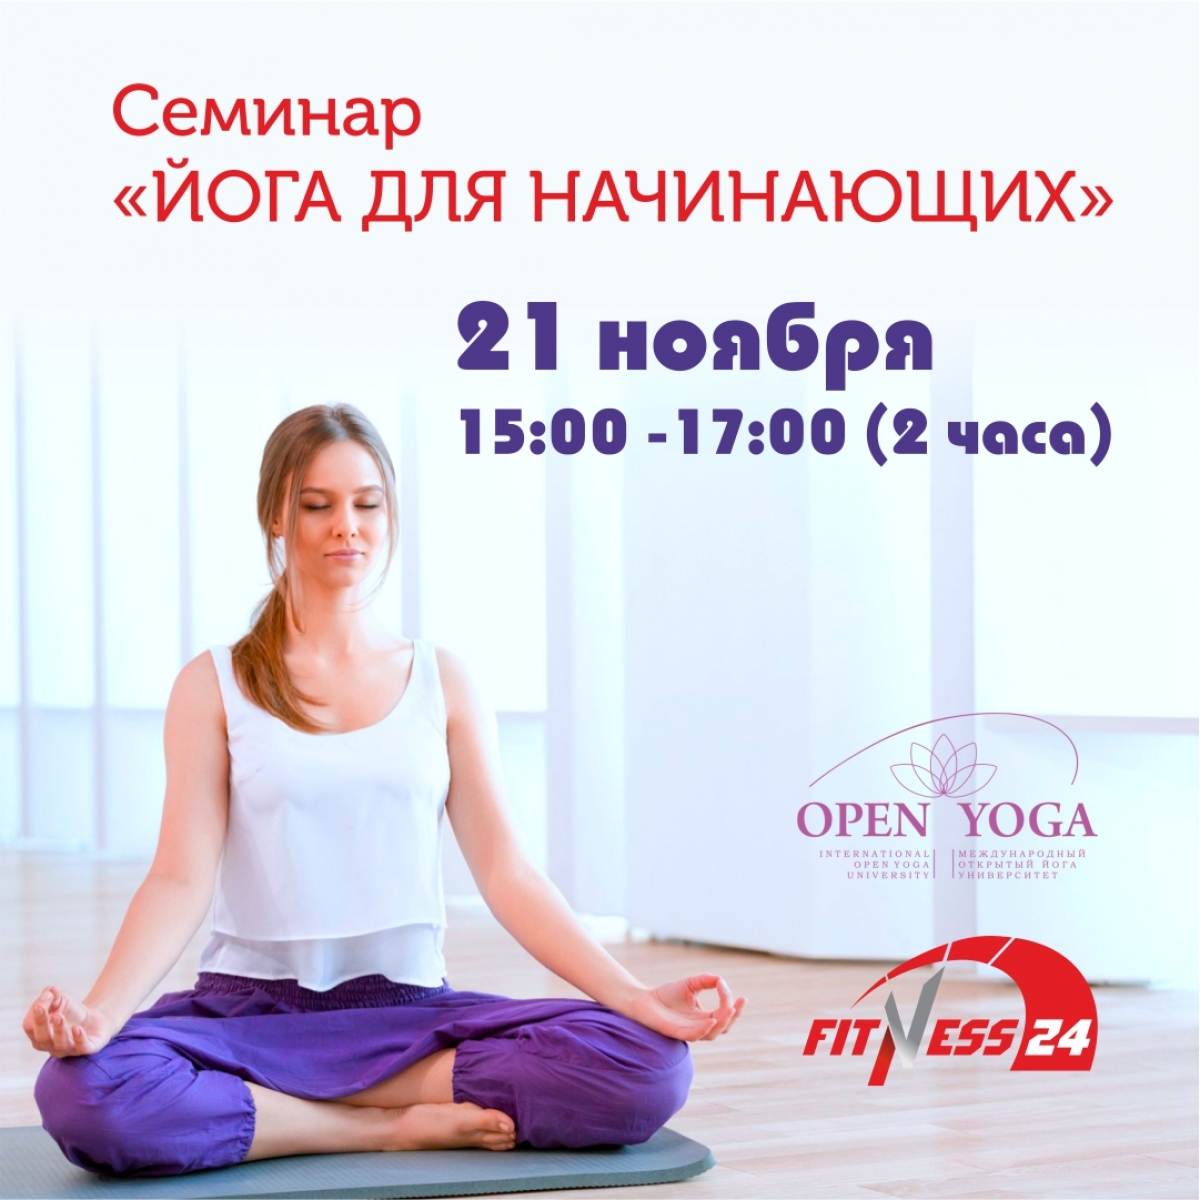 Fitness24 на Ветеранов приглашает на Семинар «Йога для начинающих»  